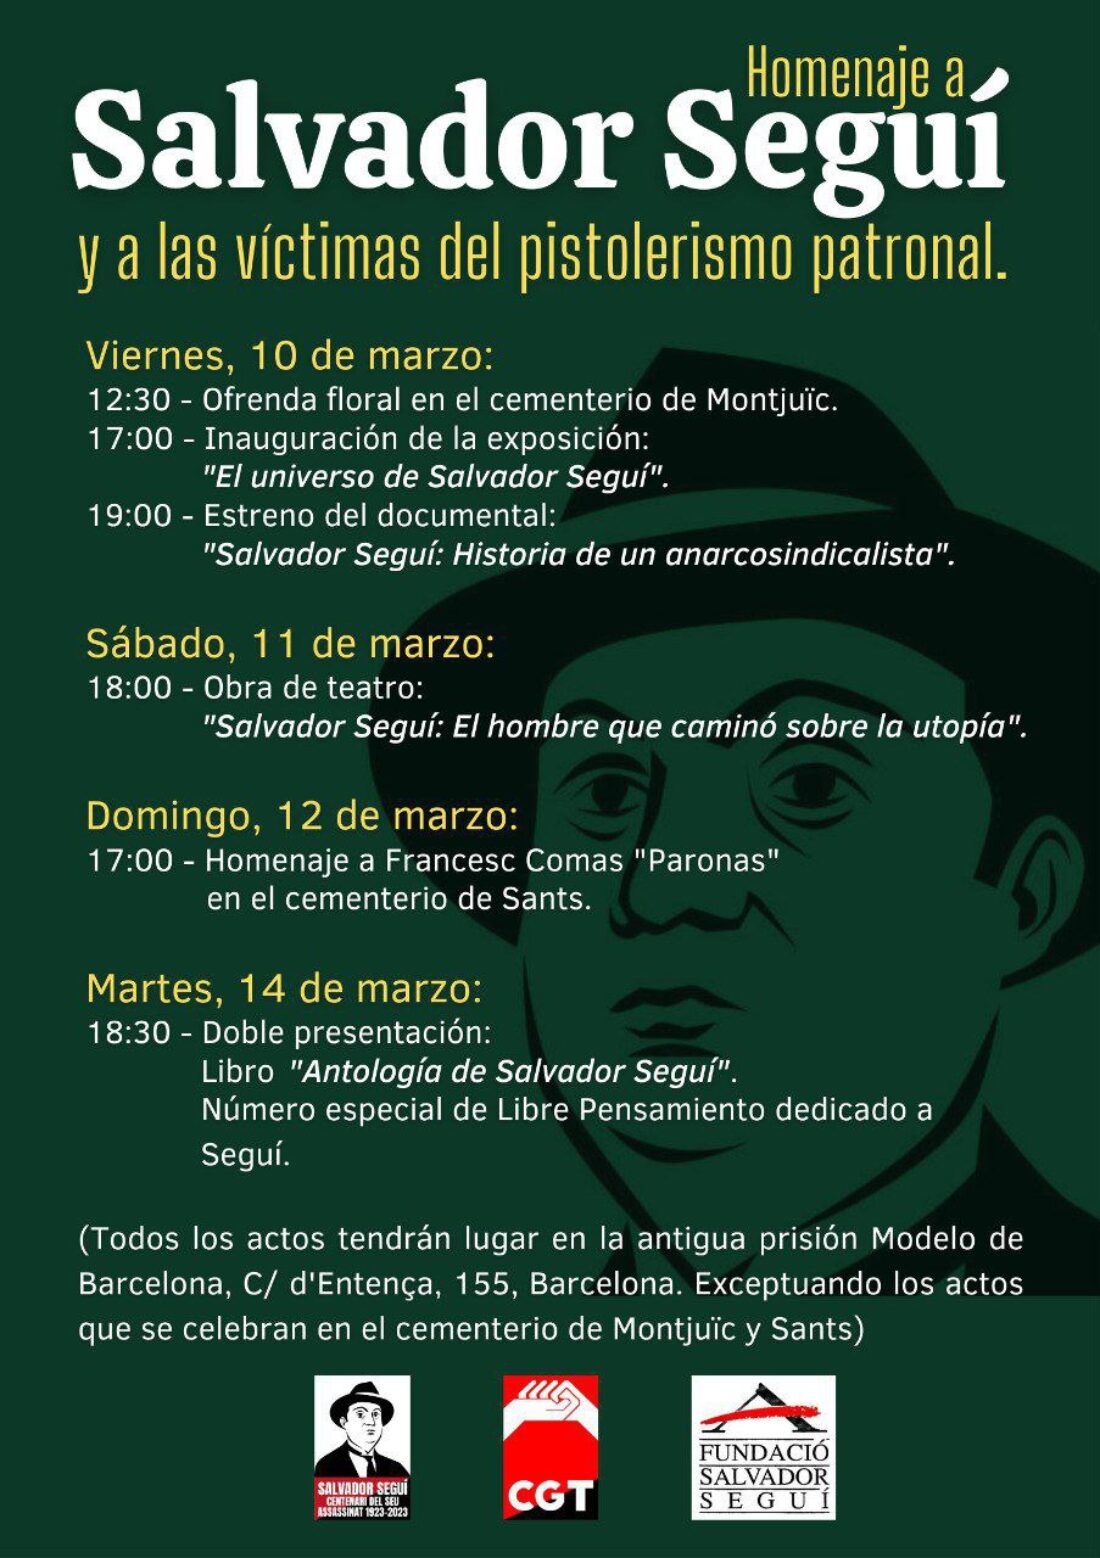 El próximo 10 de marzo se conmemora el centenario del asesinato de Salvador Seguí